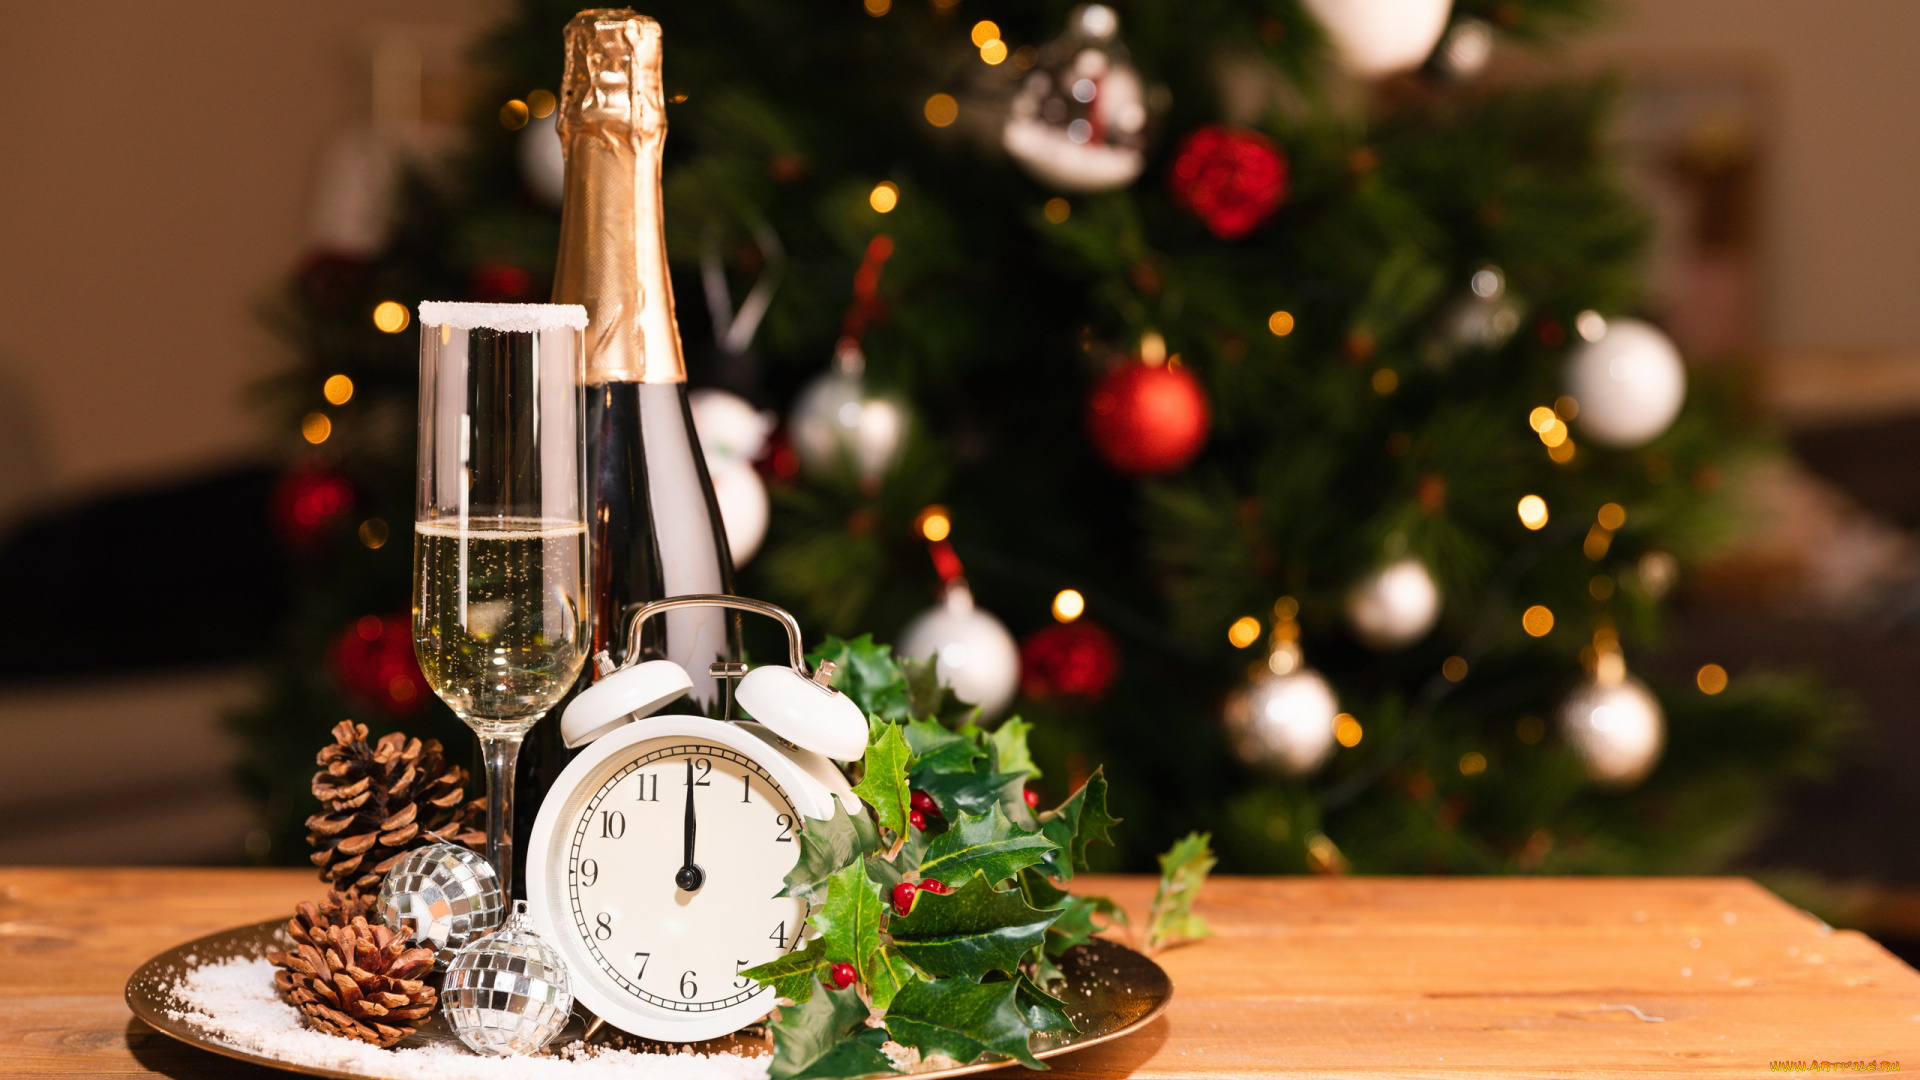 праздничные, -, разное, , новый, год, поднос, елка, остролист, бутылка, бокал, шампанское, шарики, шишки, будильник